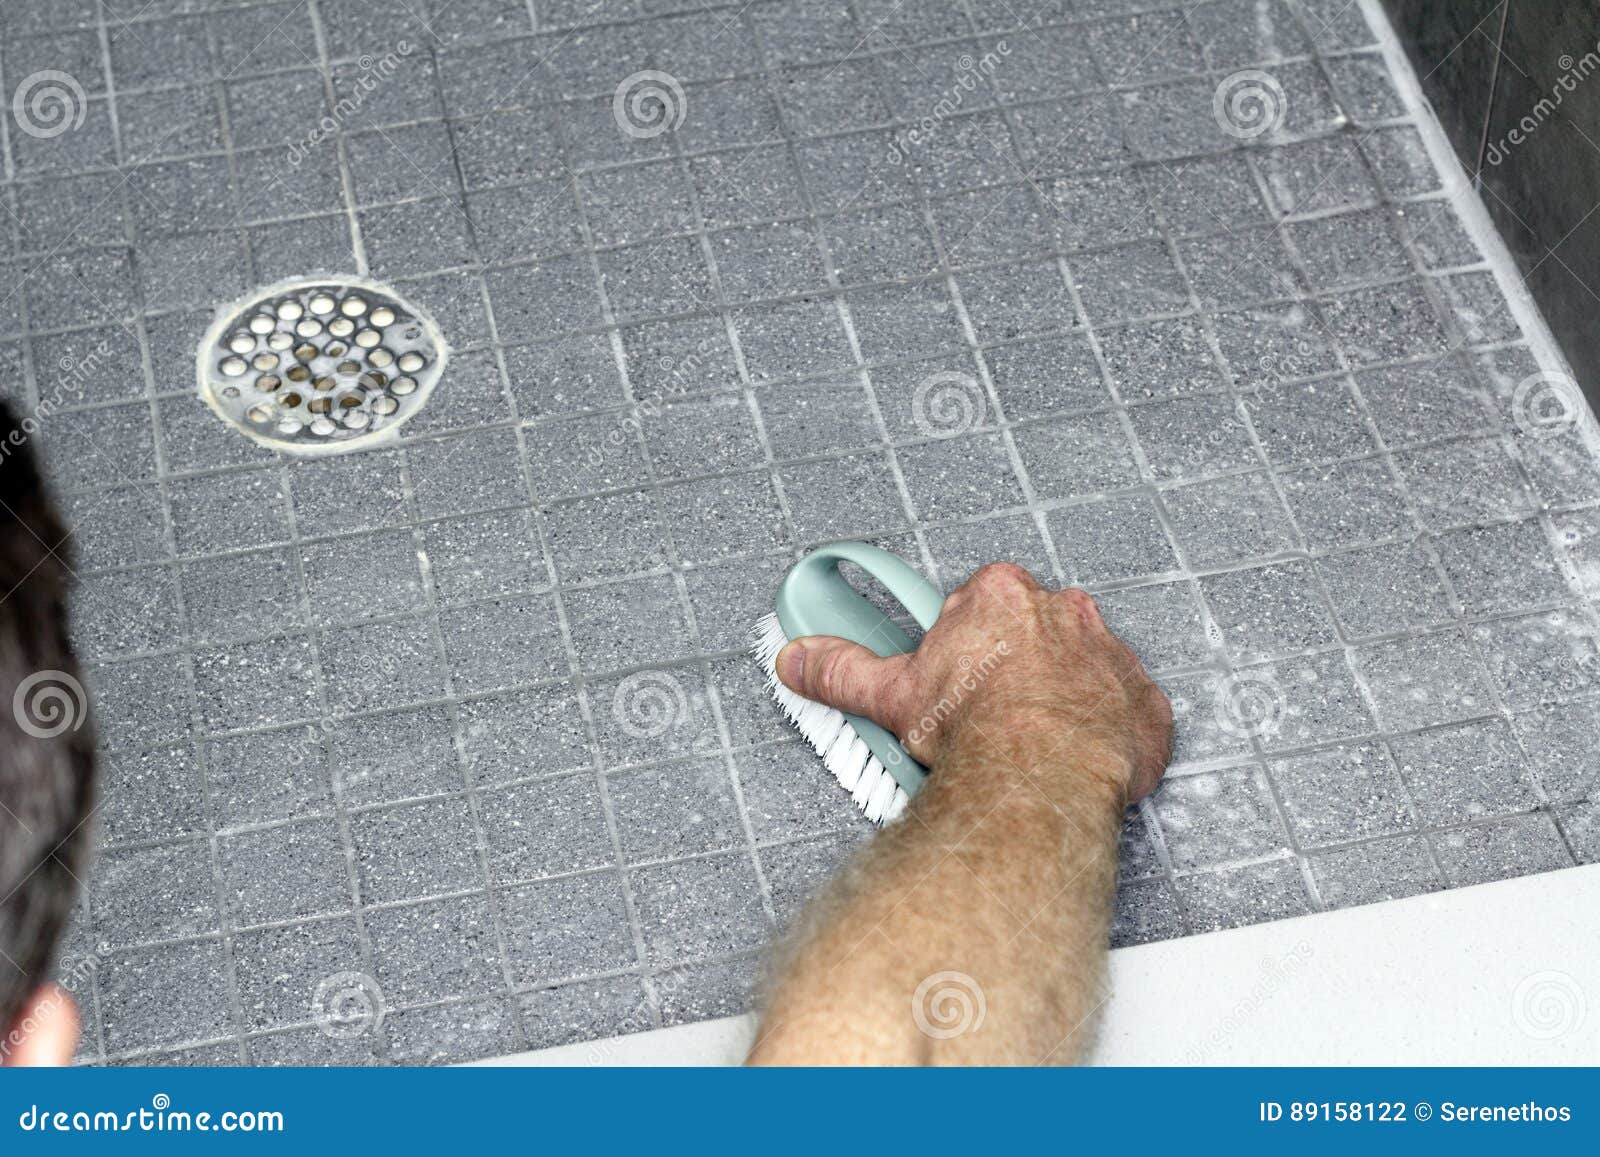 man scrubbing a shower floor